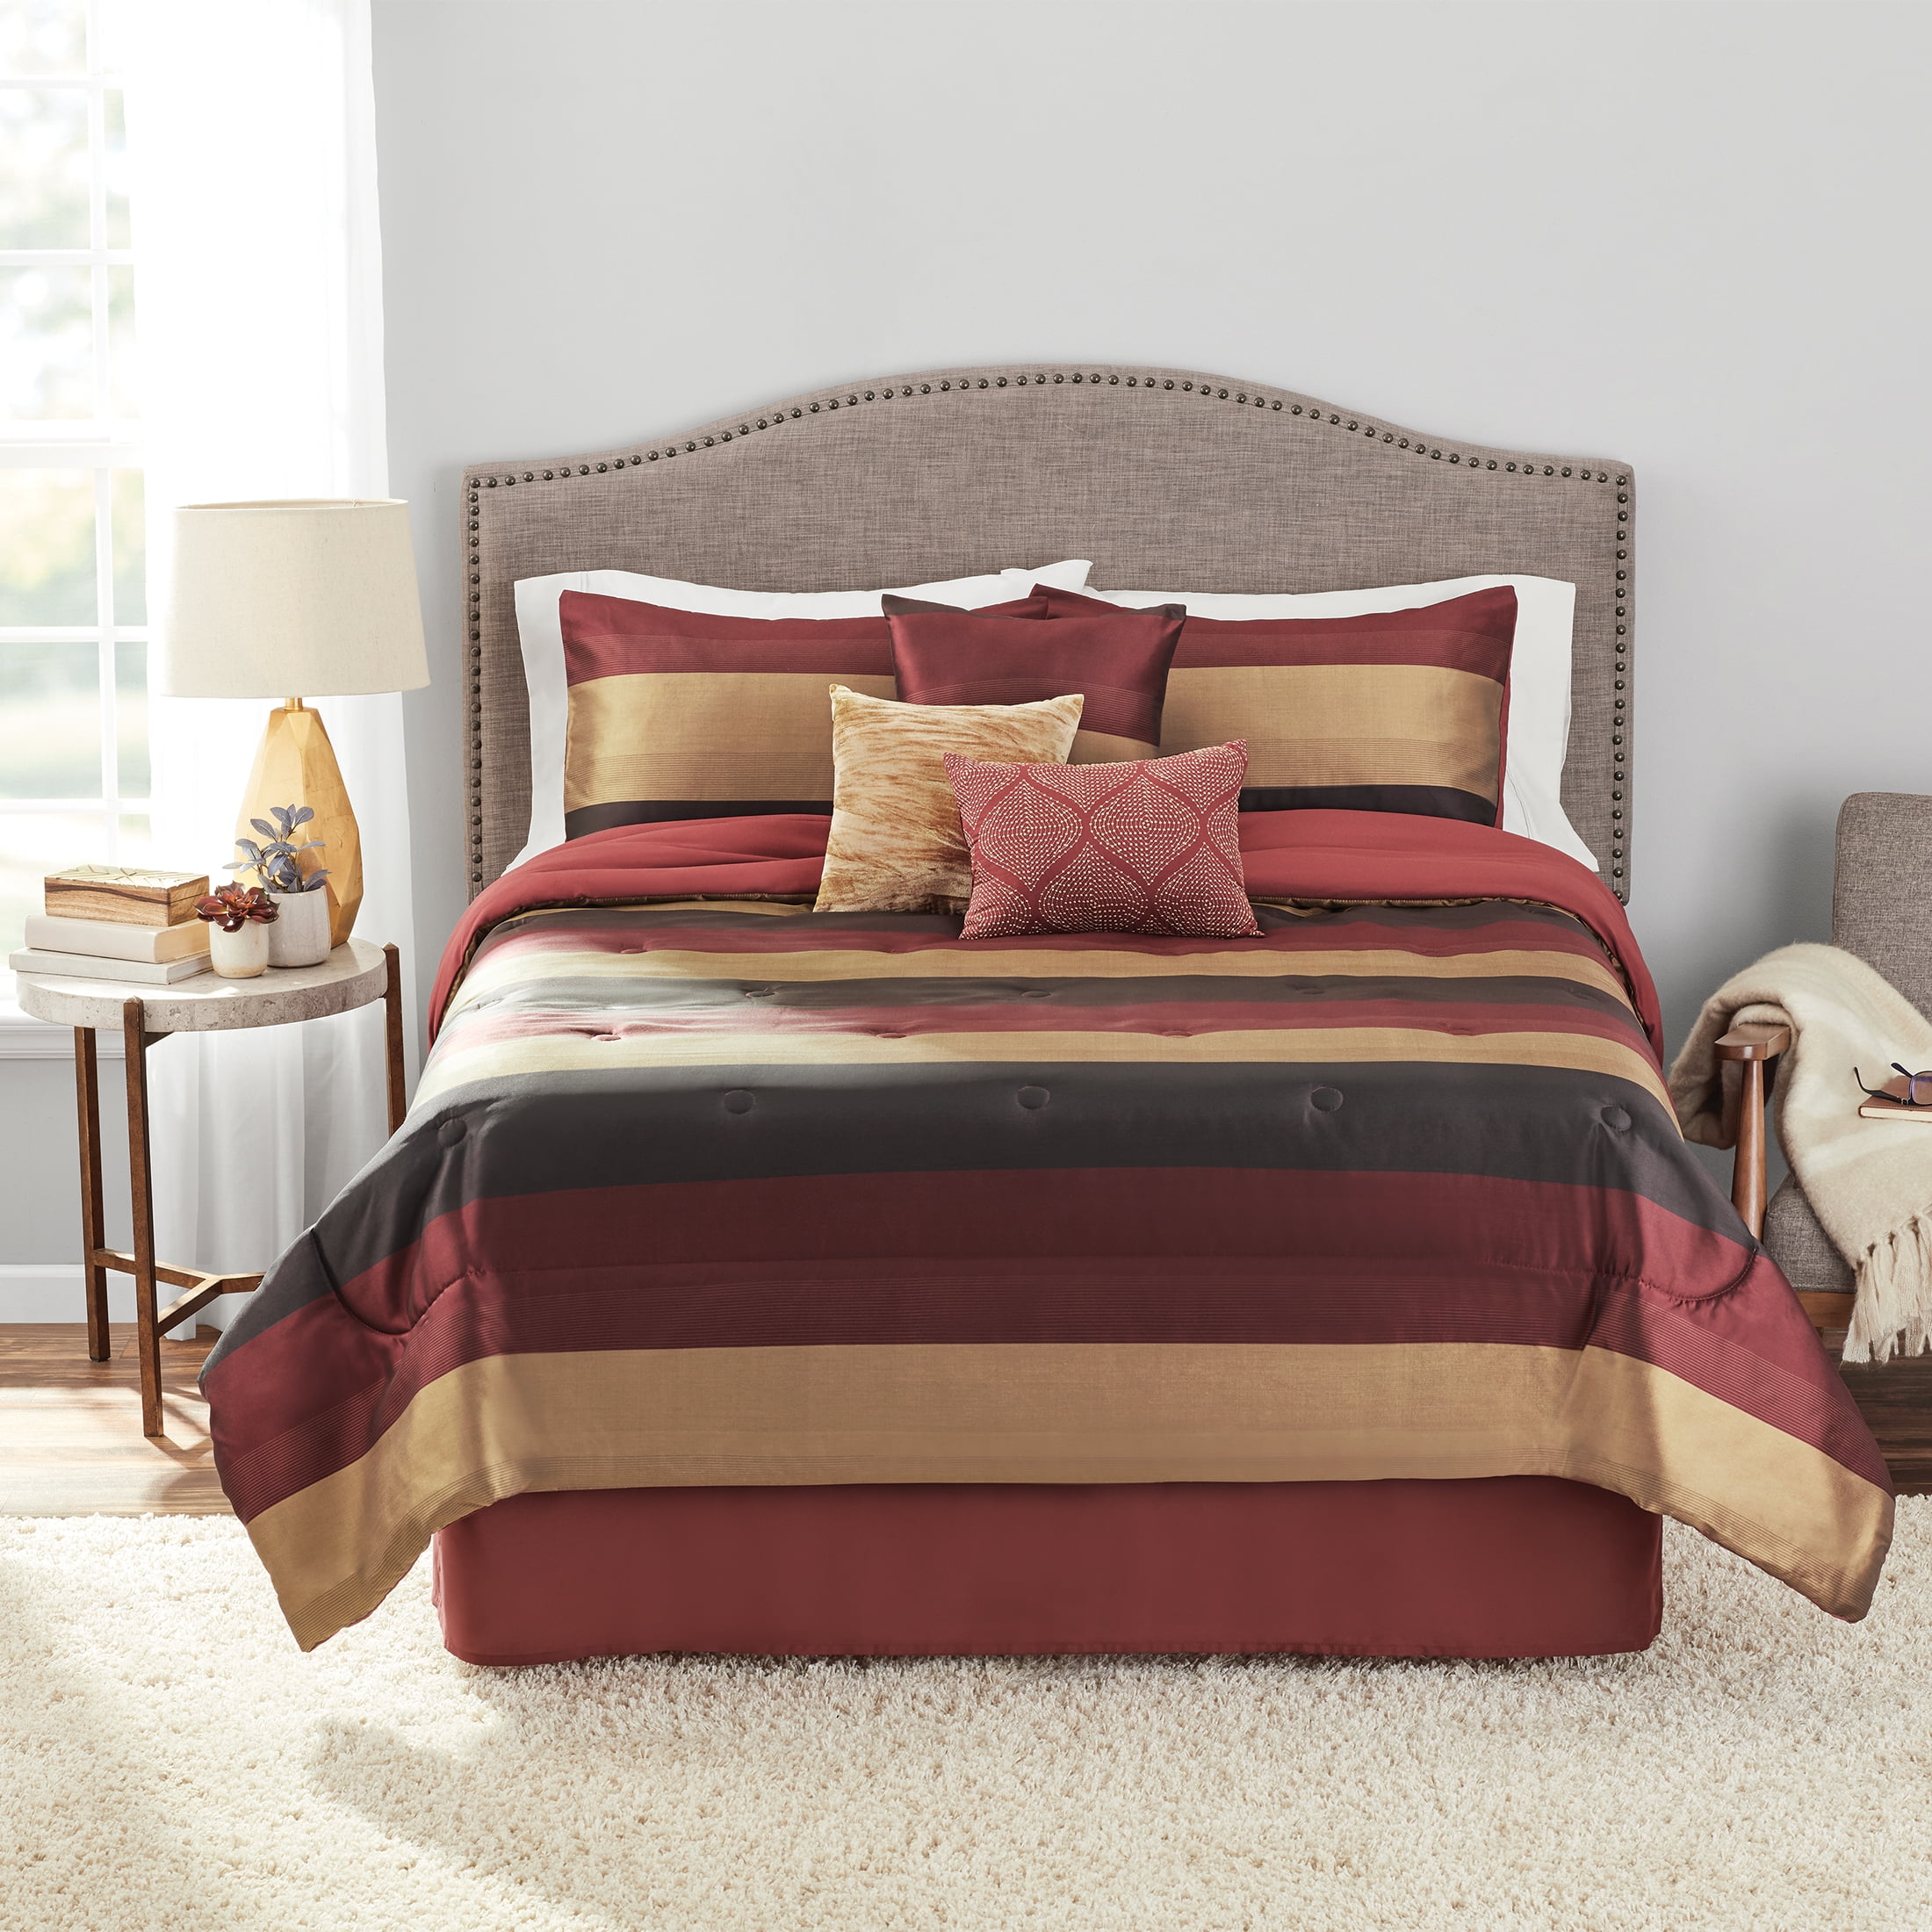 Blue 100% Microfiber Luxury Comforter Bedding Set Hudson Design Bedding Set 